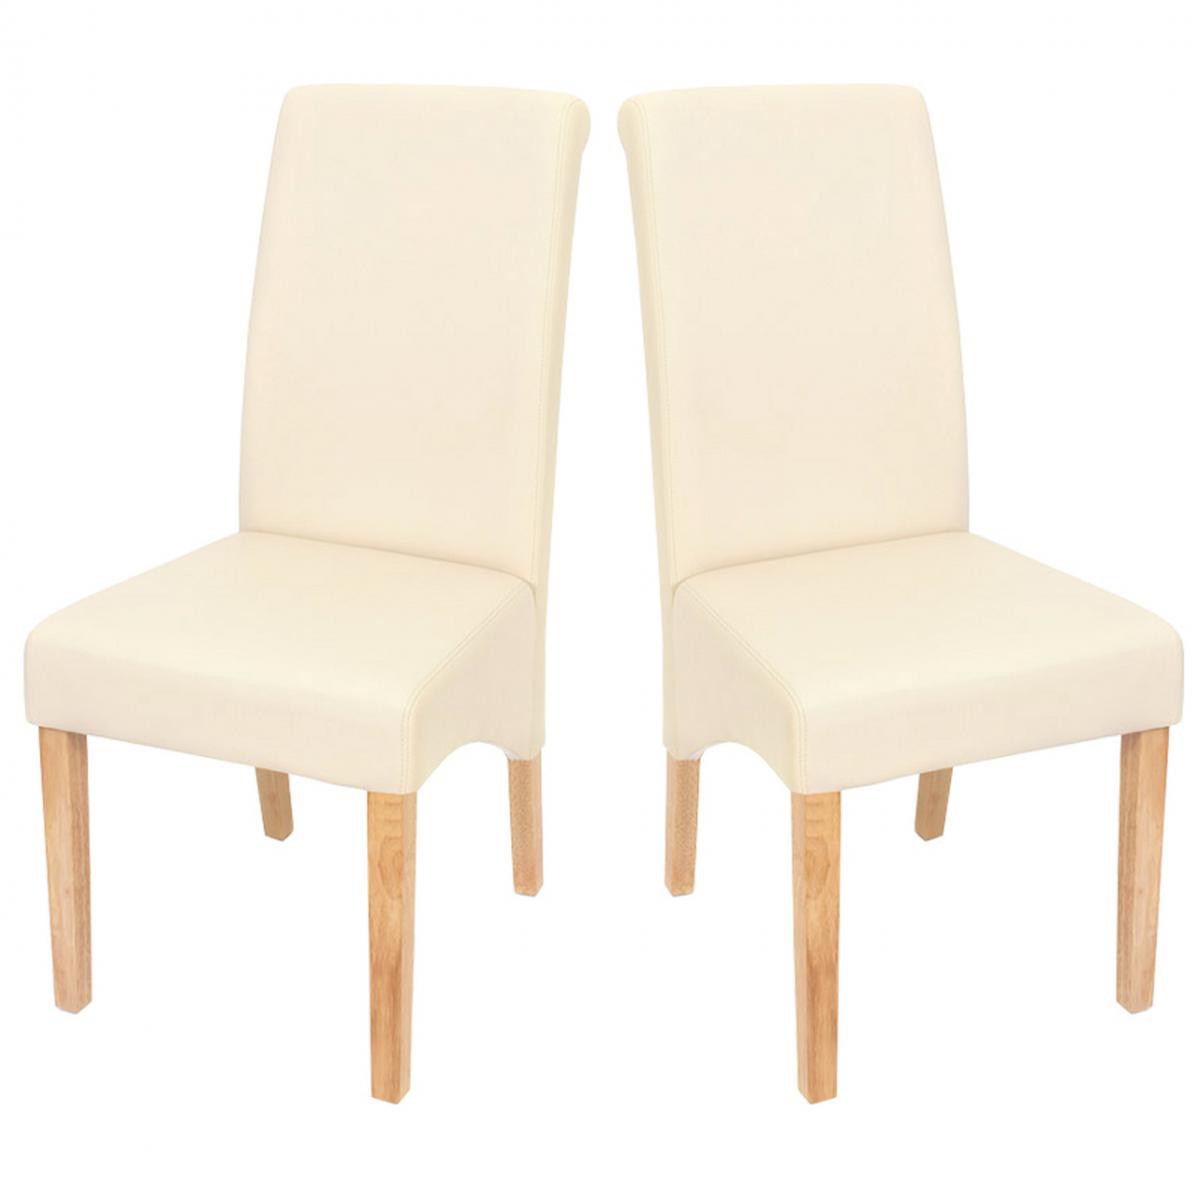 Mendler - 2x chaise de séjour M37, simili-cuir mat, crème/pieds clairs - Chaises